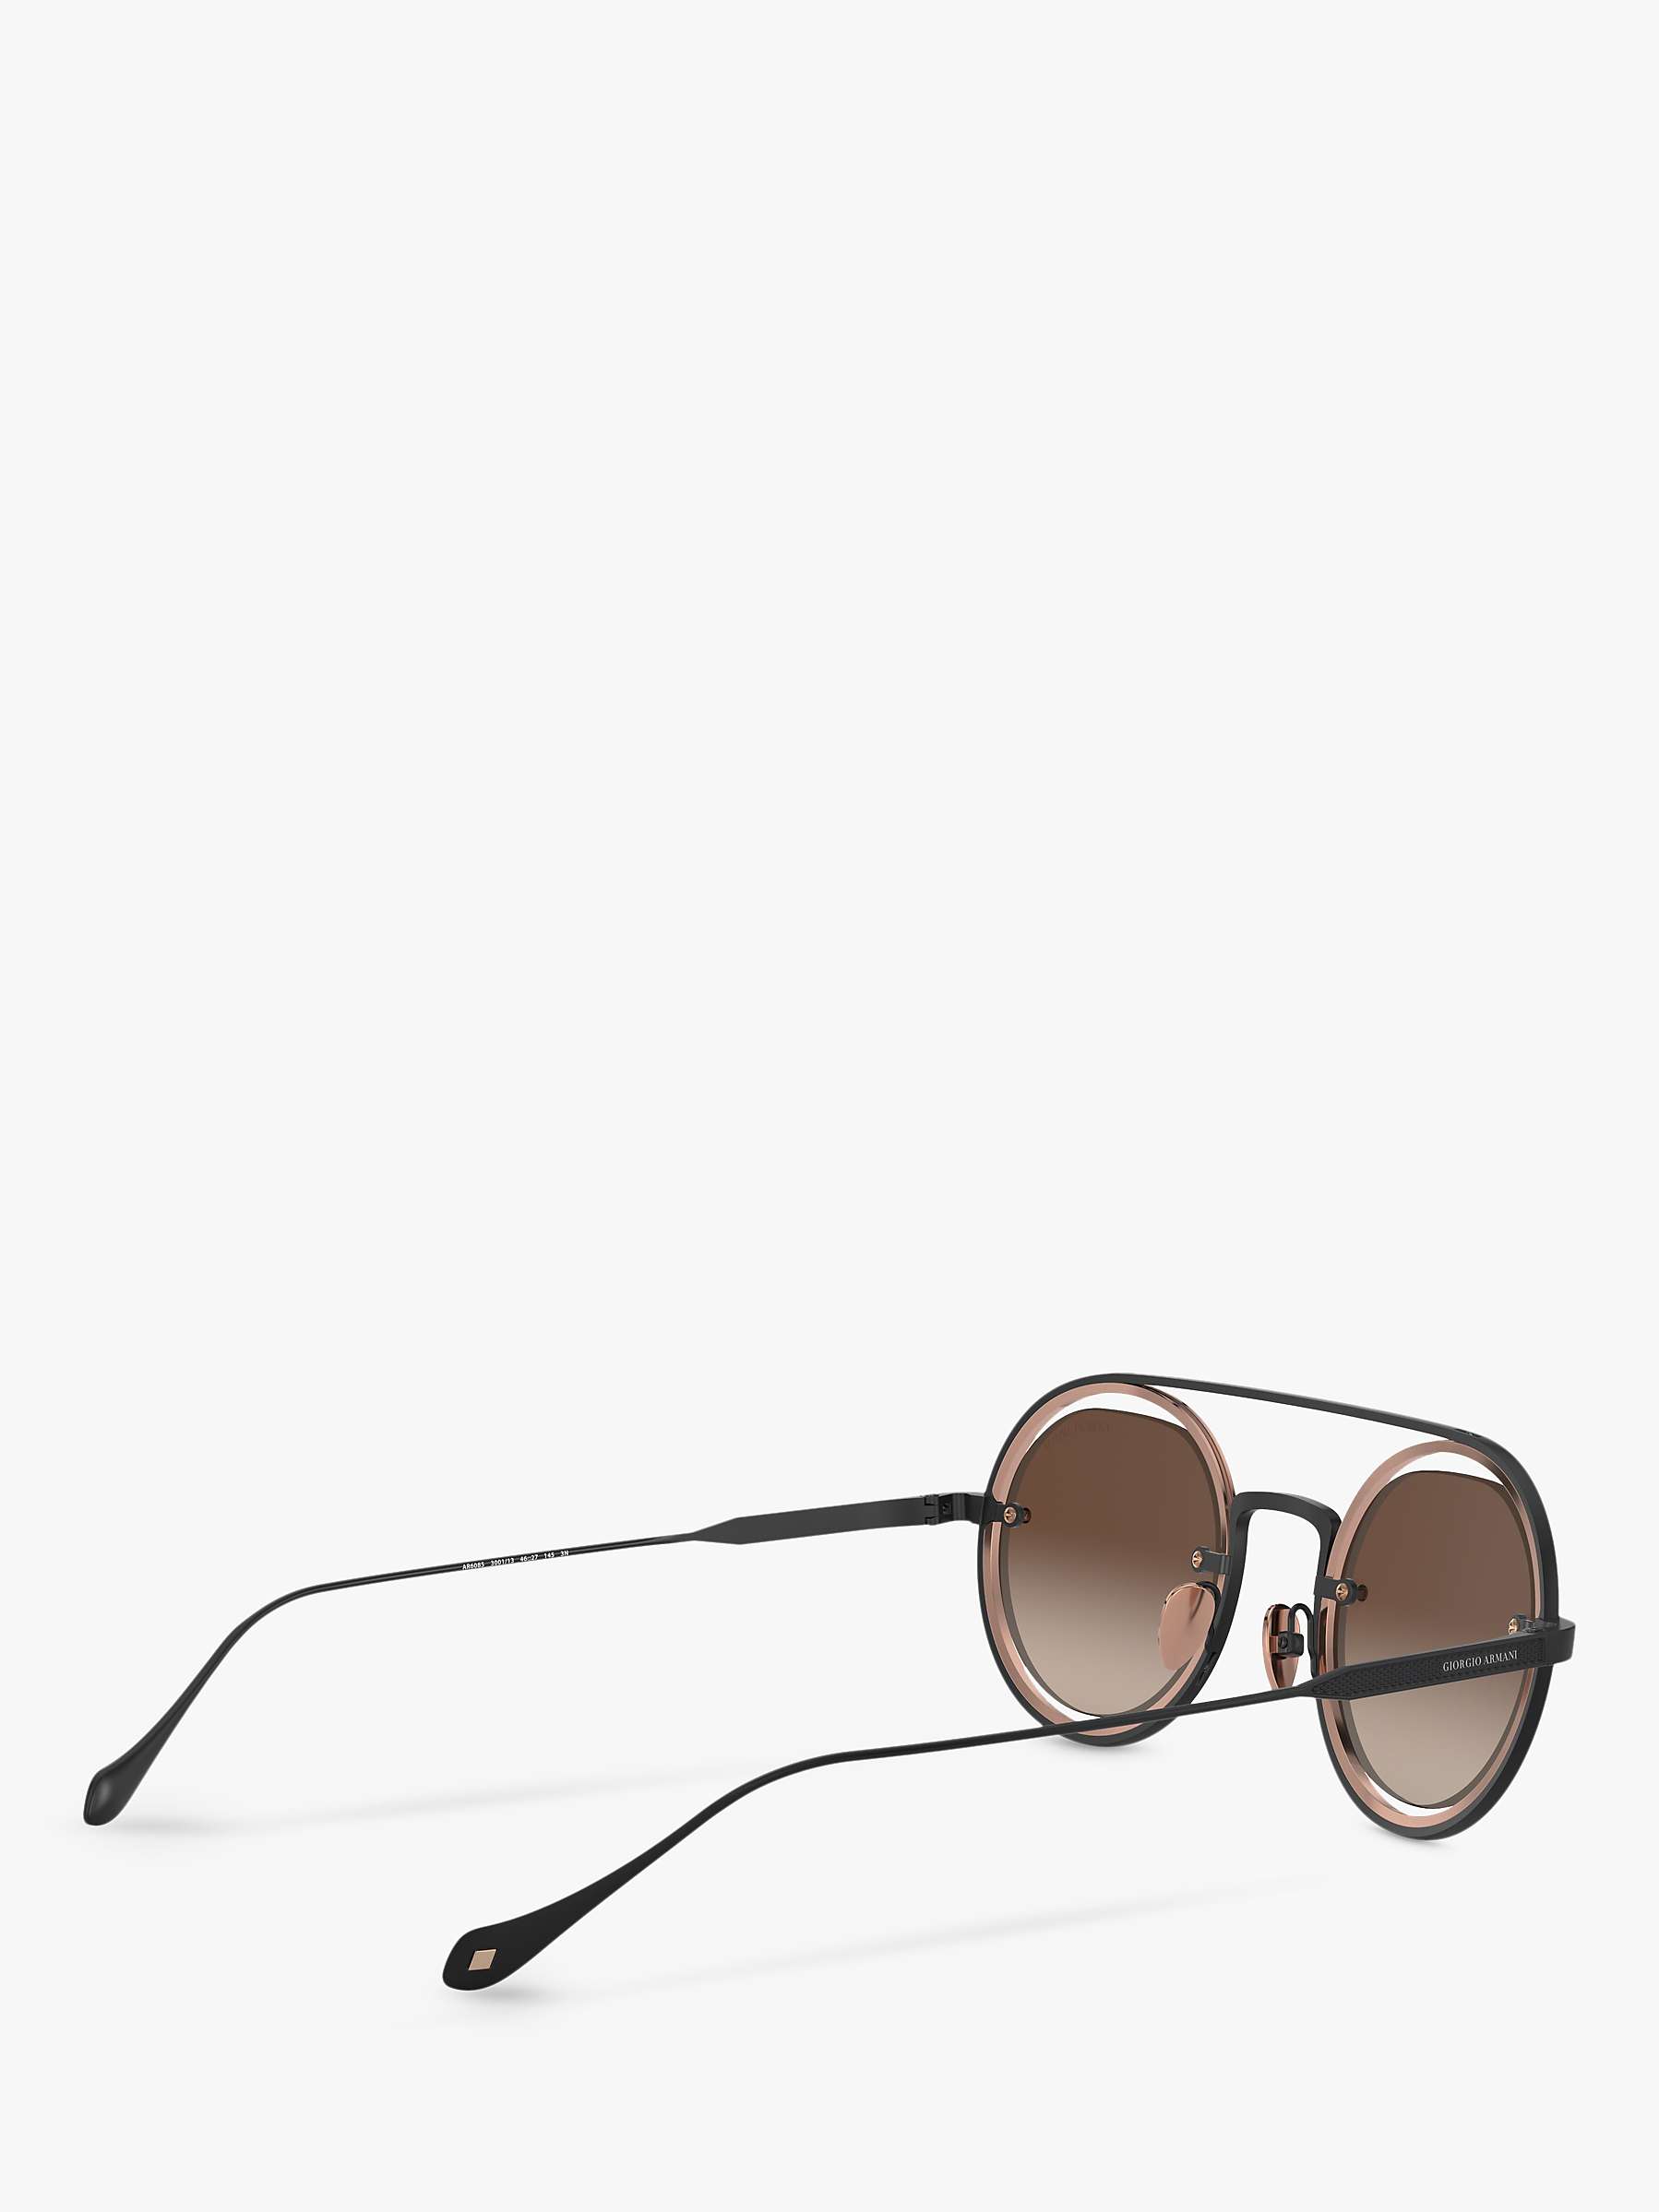 Buy Giorgio Armani AR6085 Men's Round Sunglasses, Matte Black/Bronze Gradient Online at johnlewis.com